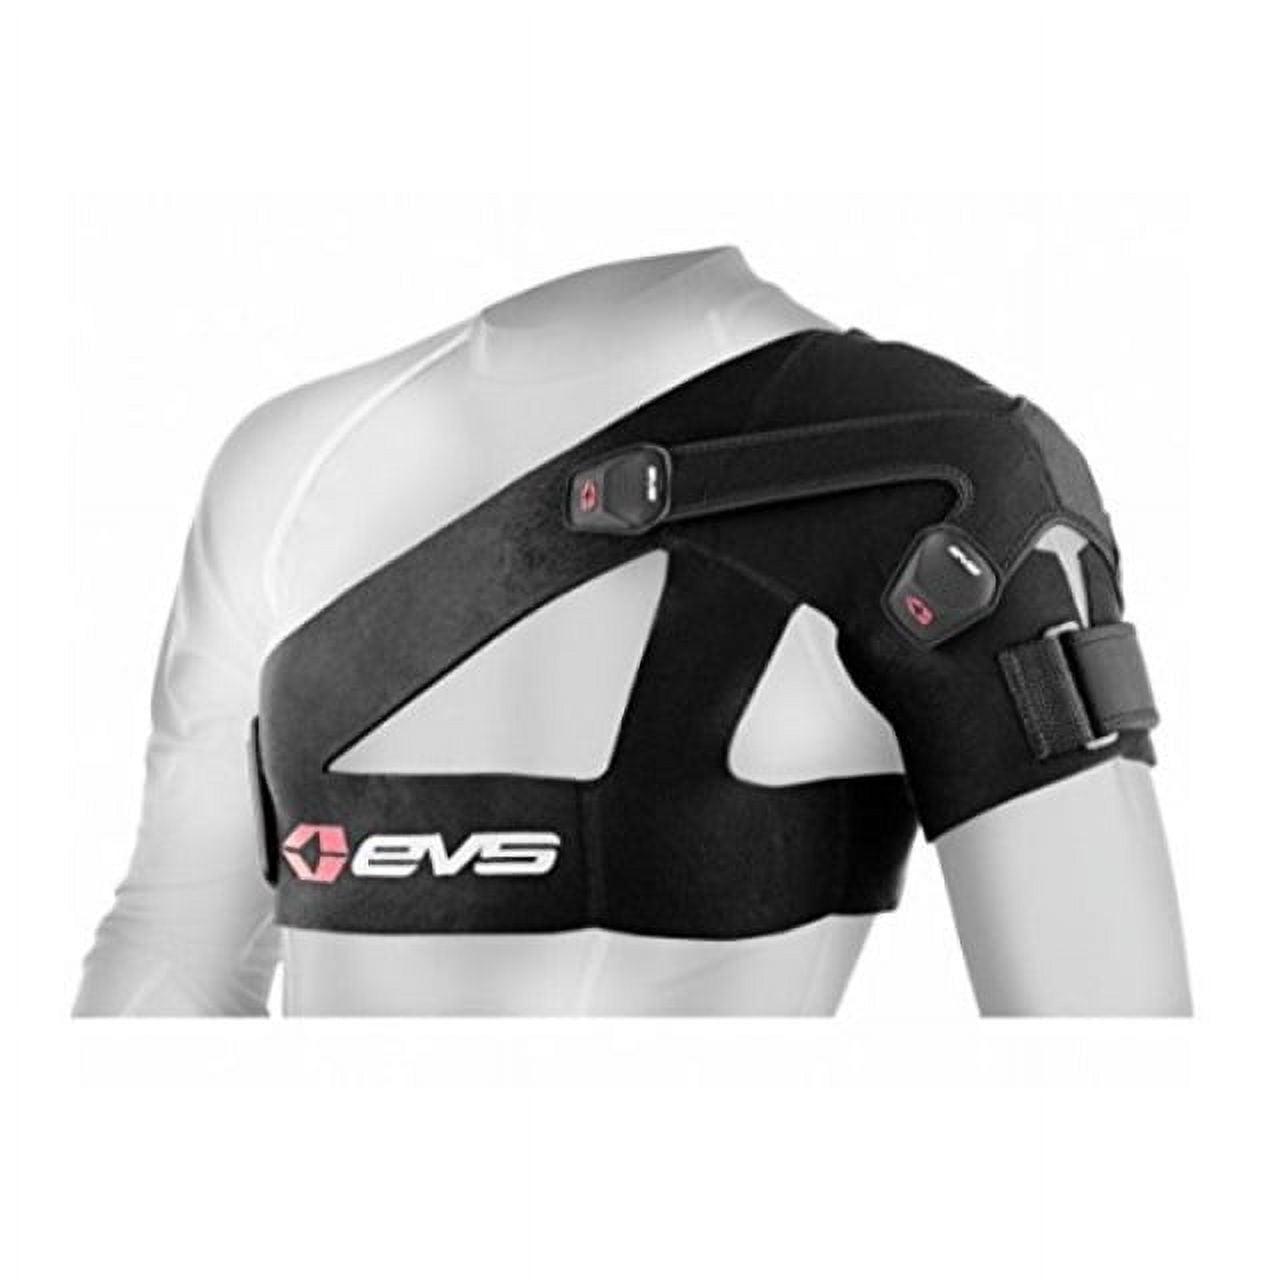 EVS Sports SB03 Shoulder Brace (Large)